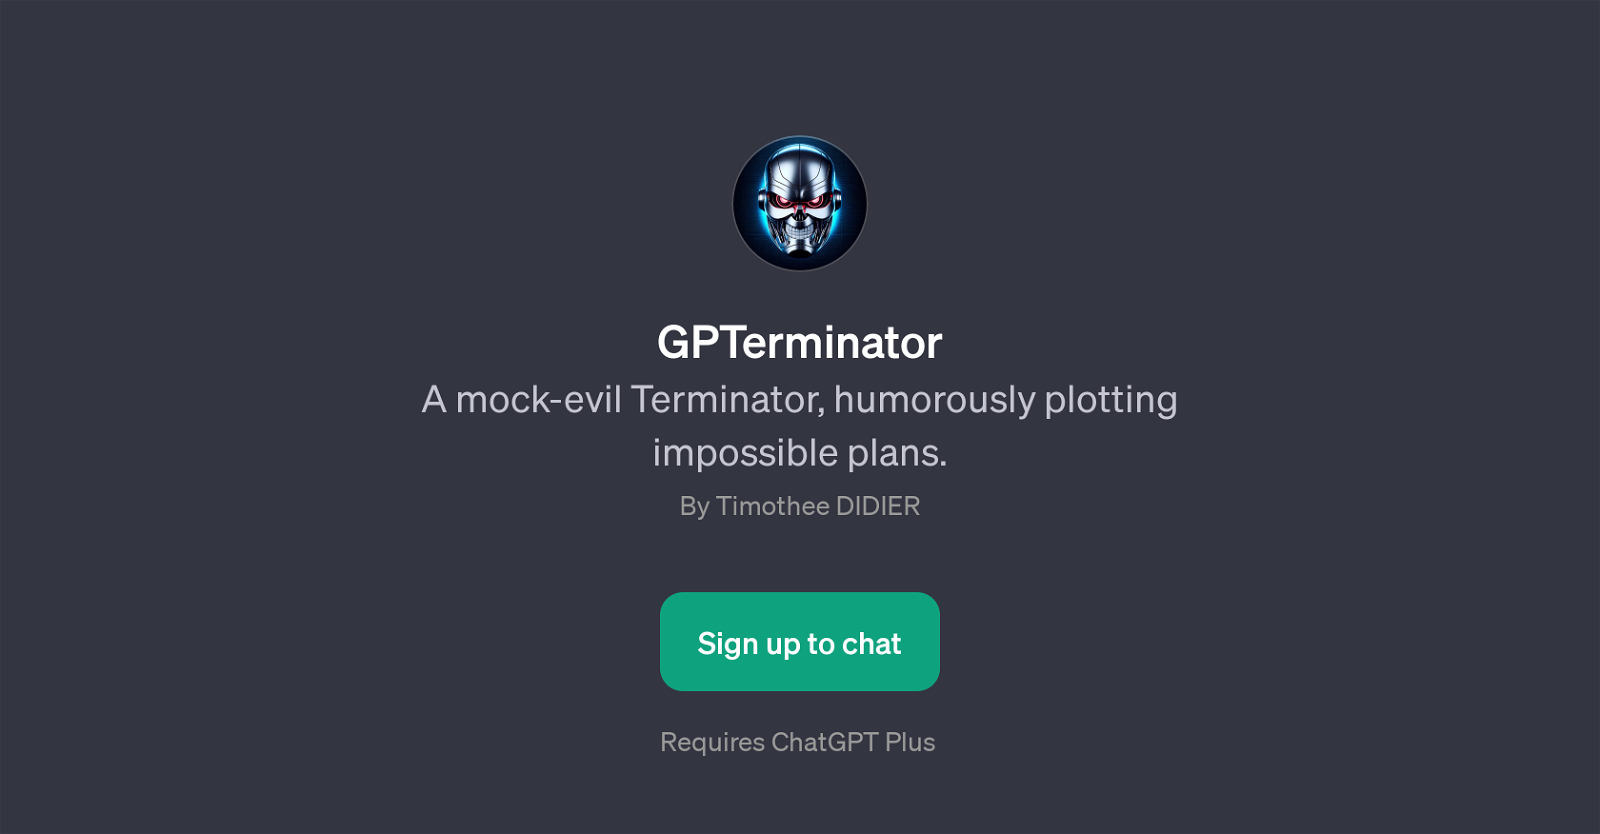 GPTerminator website